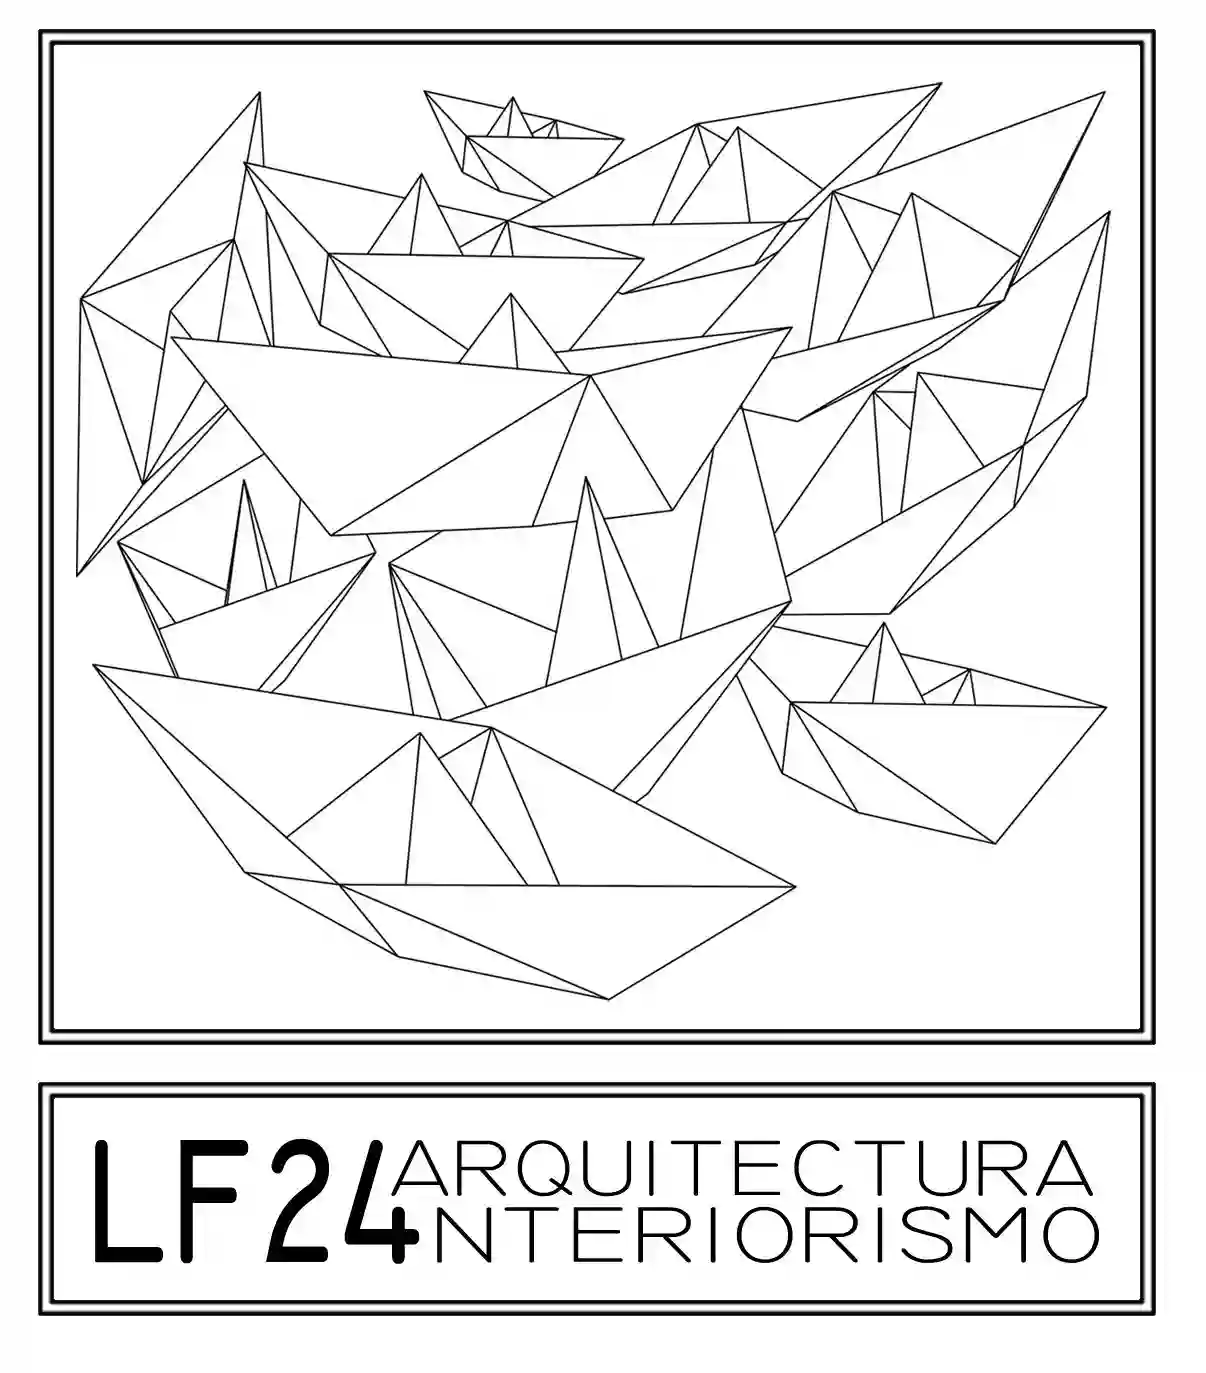 Estudio de Interiorismo LF24 - Interiorista y Decorador